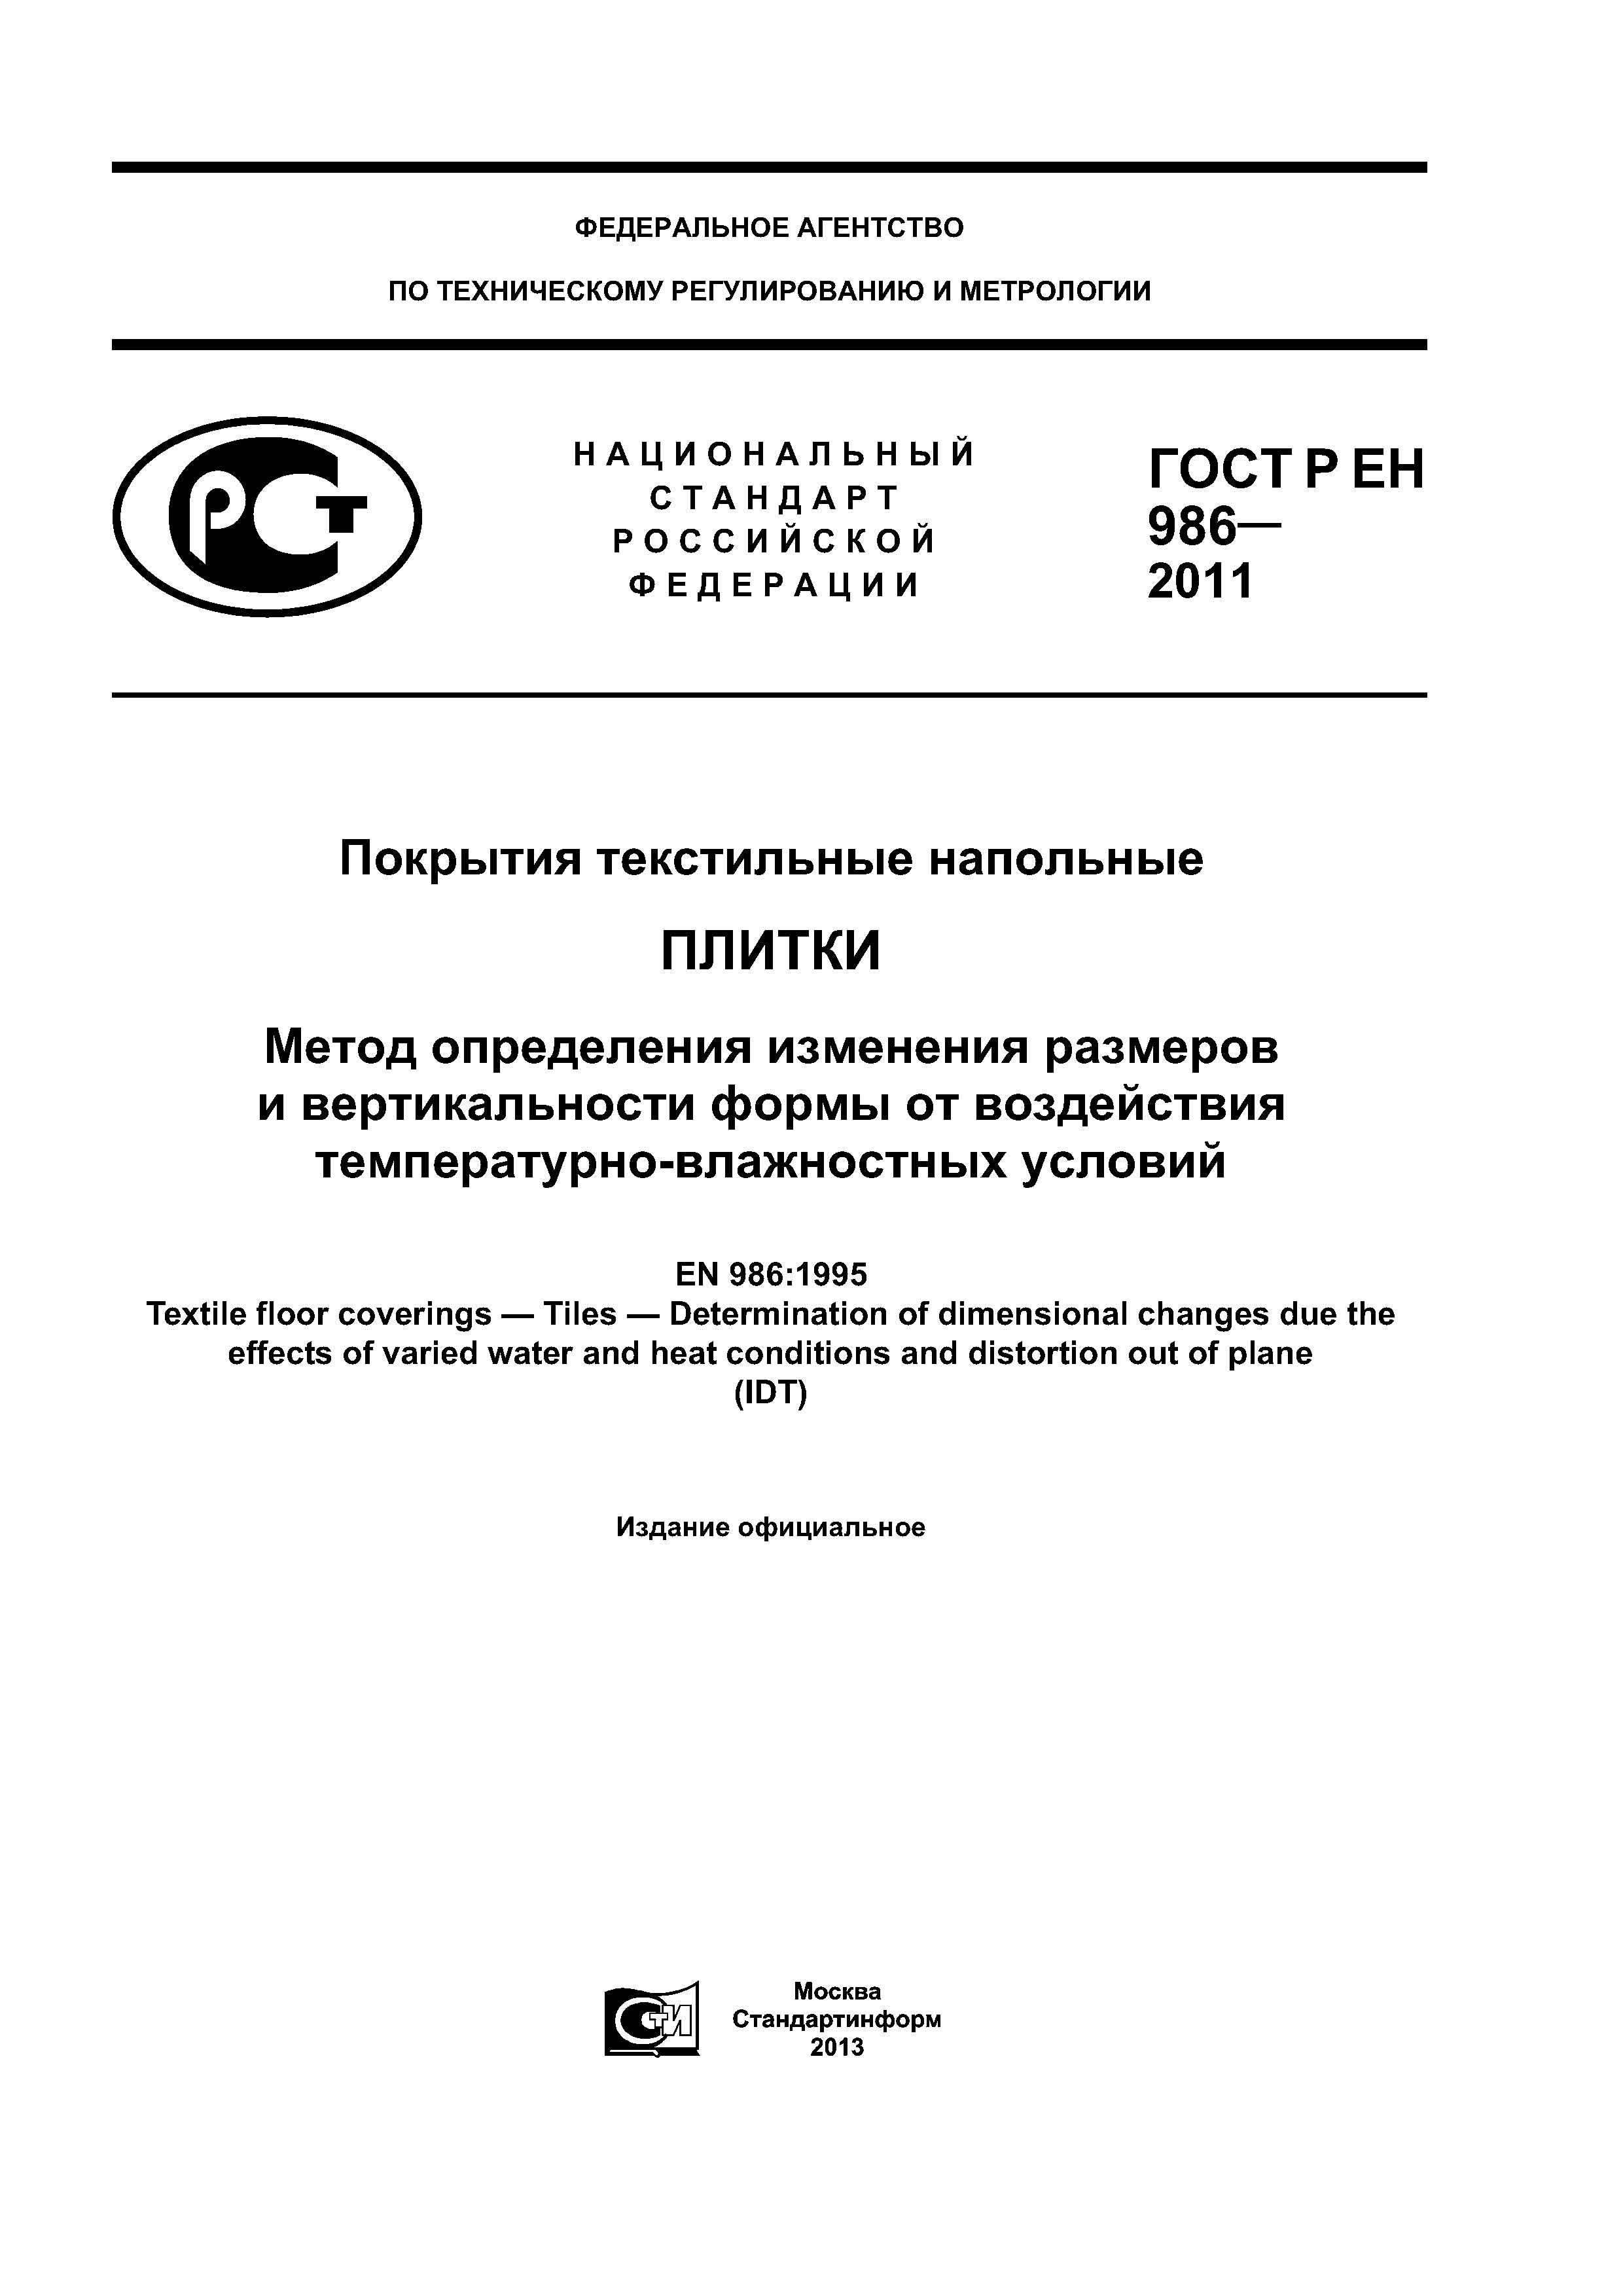 ГОСТ Р ЕН 986-2011